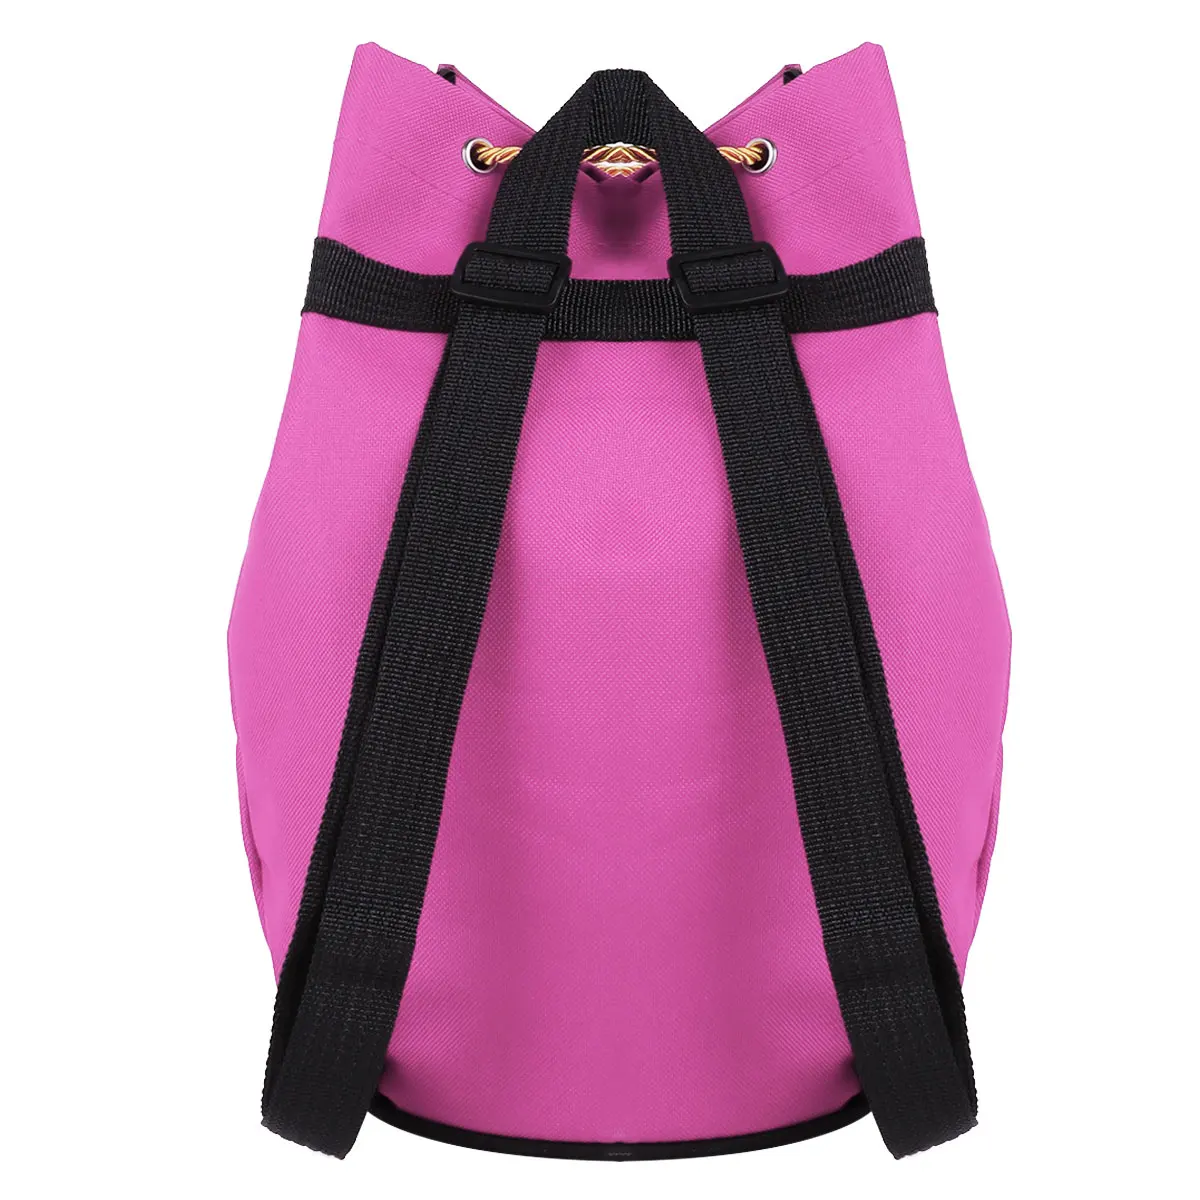 MSemis/детская балетная сумка для девочек; Танцевальная сумка; сумка на шнурке для девочек; школьный балетный рюкзак; Танцевальная сумка на плечо для девочек